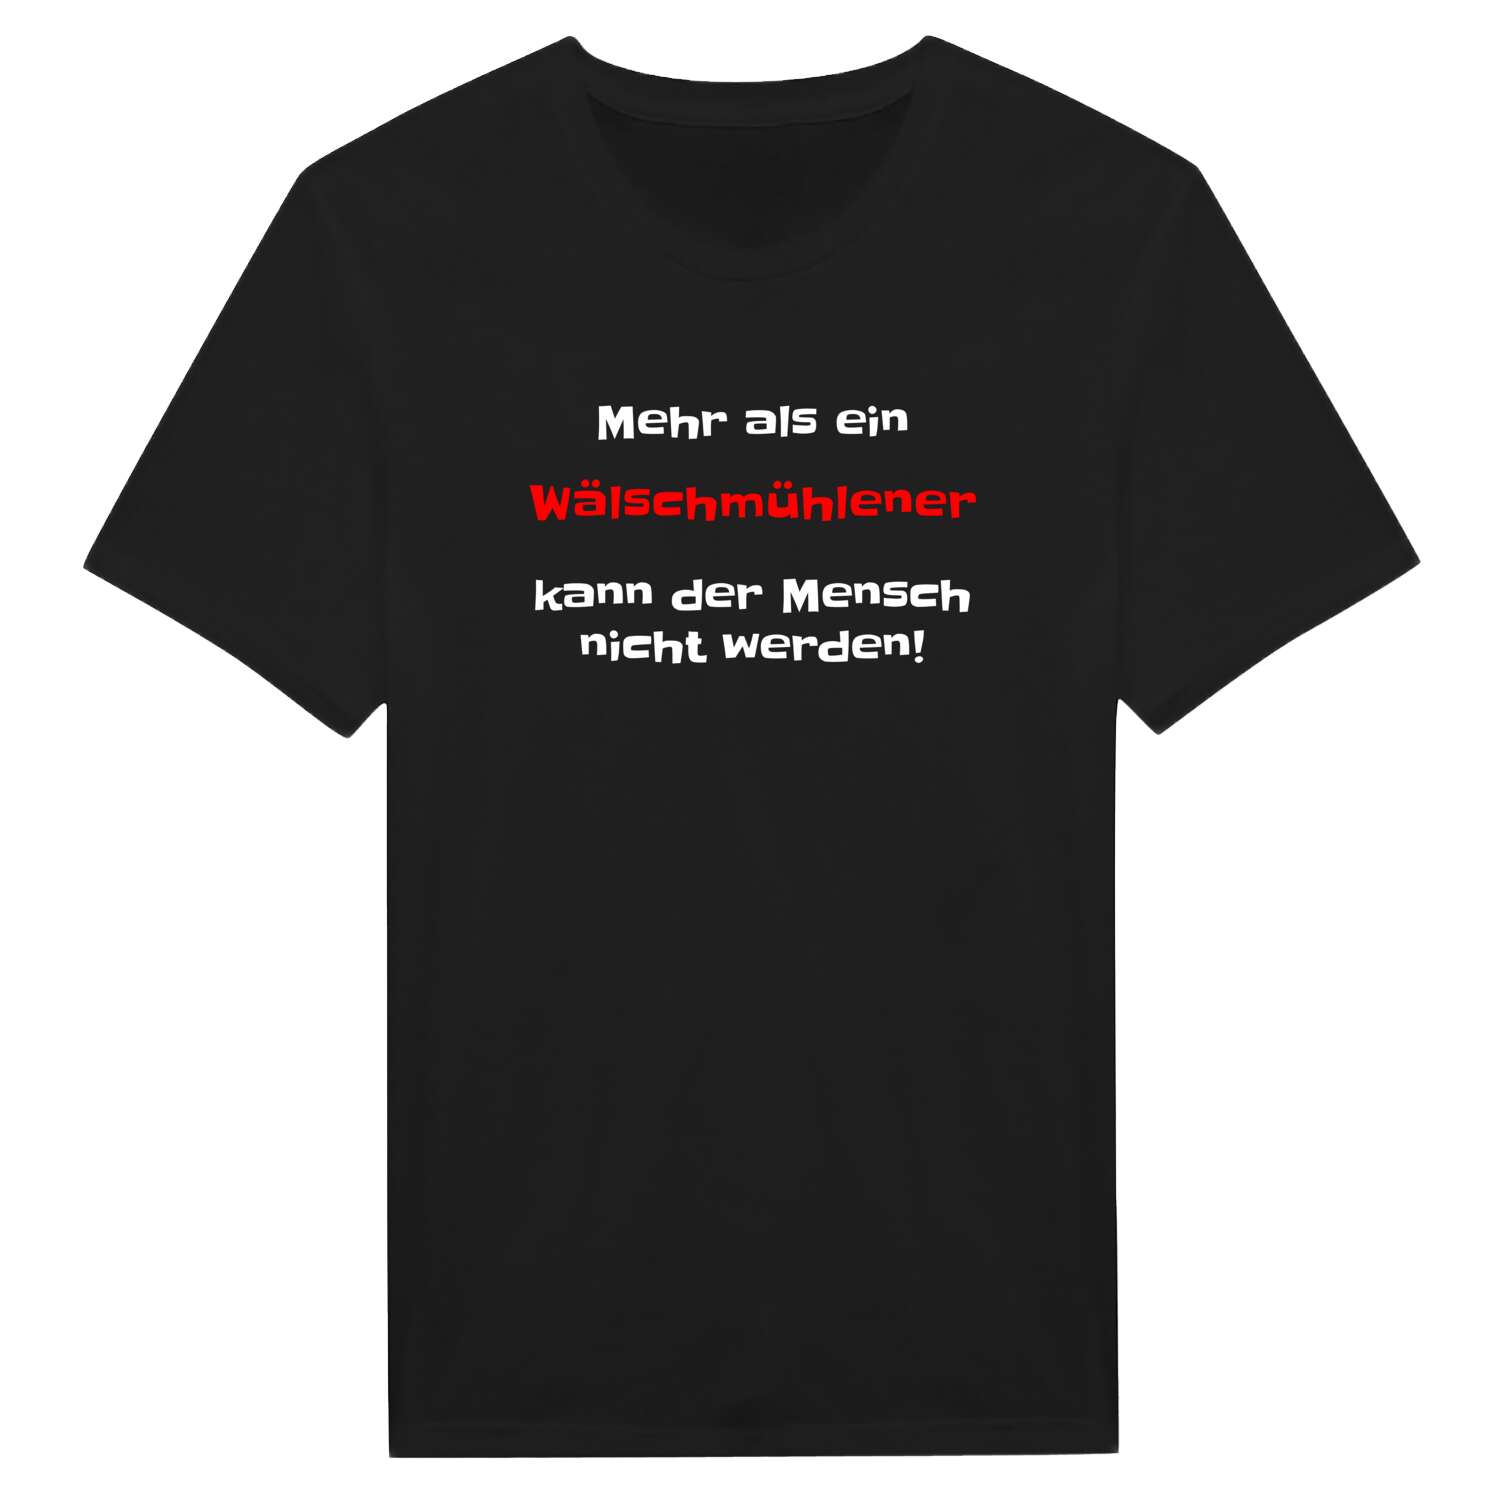 Wälschmühle T-Shirt »Mehr als ein«